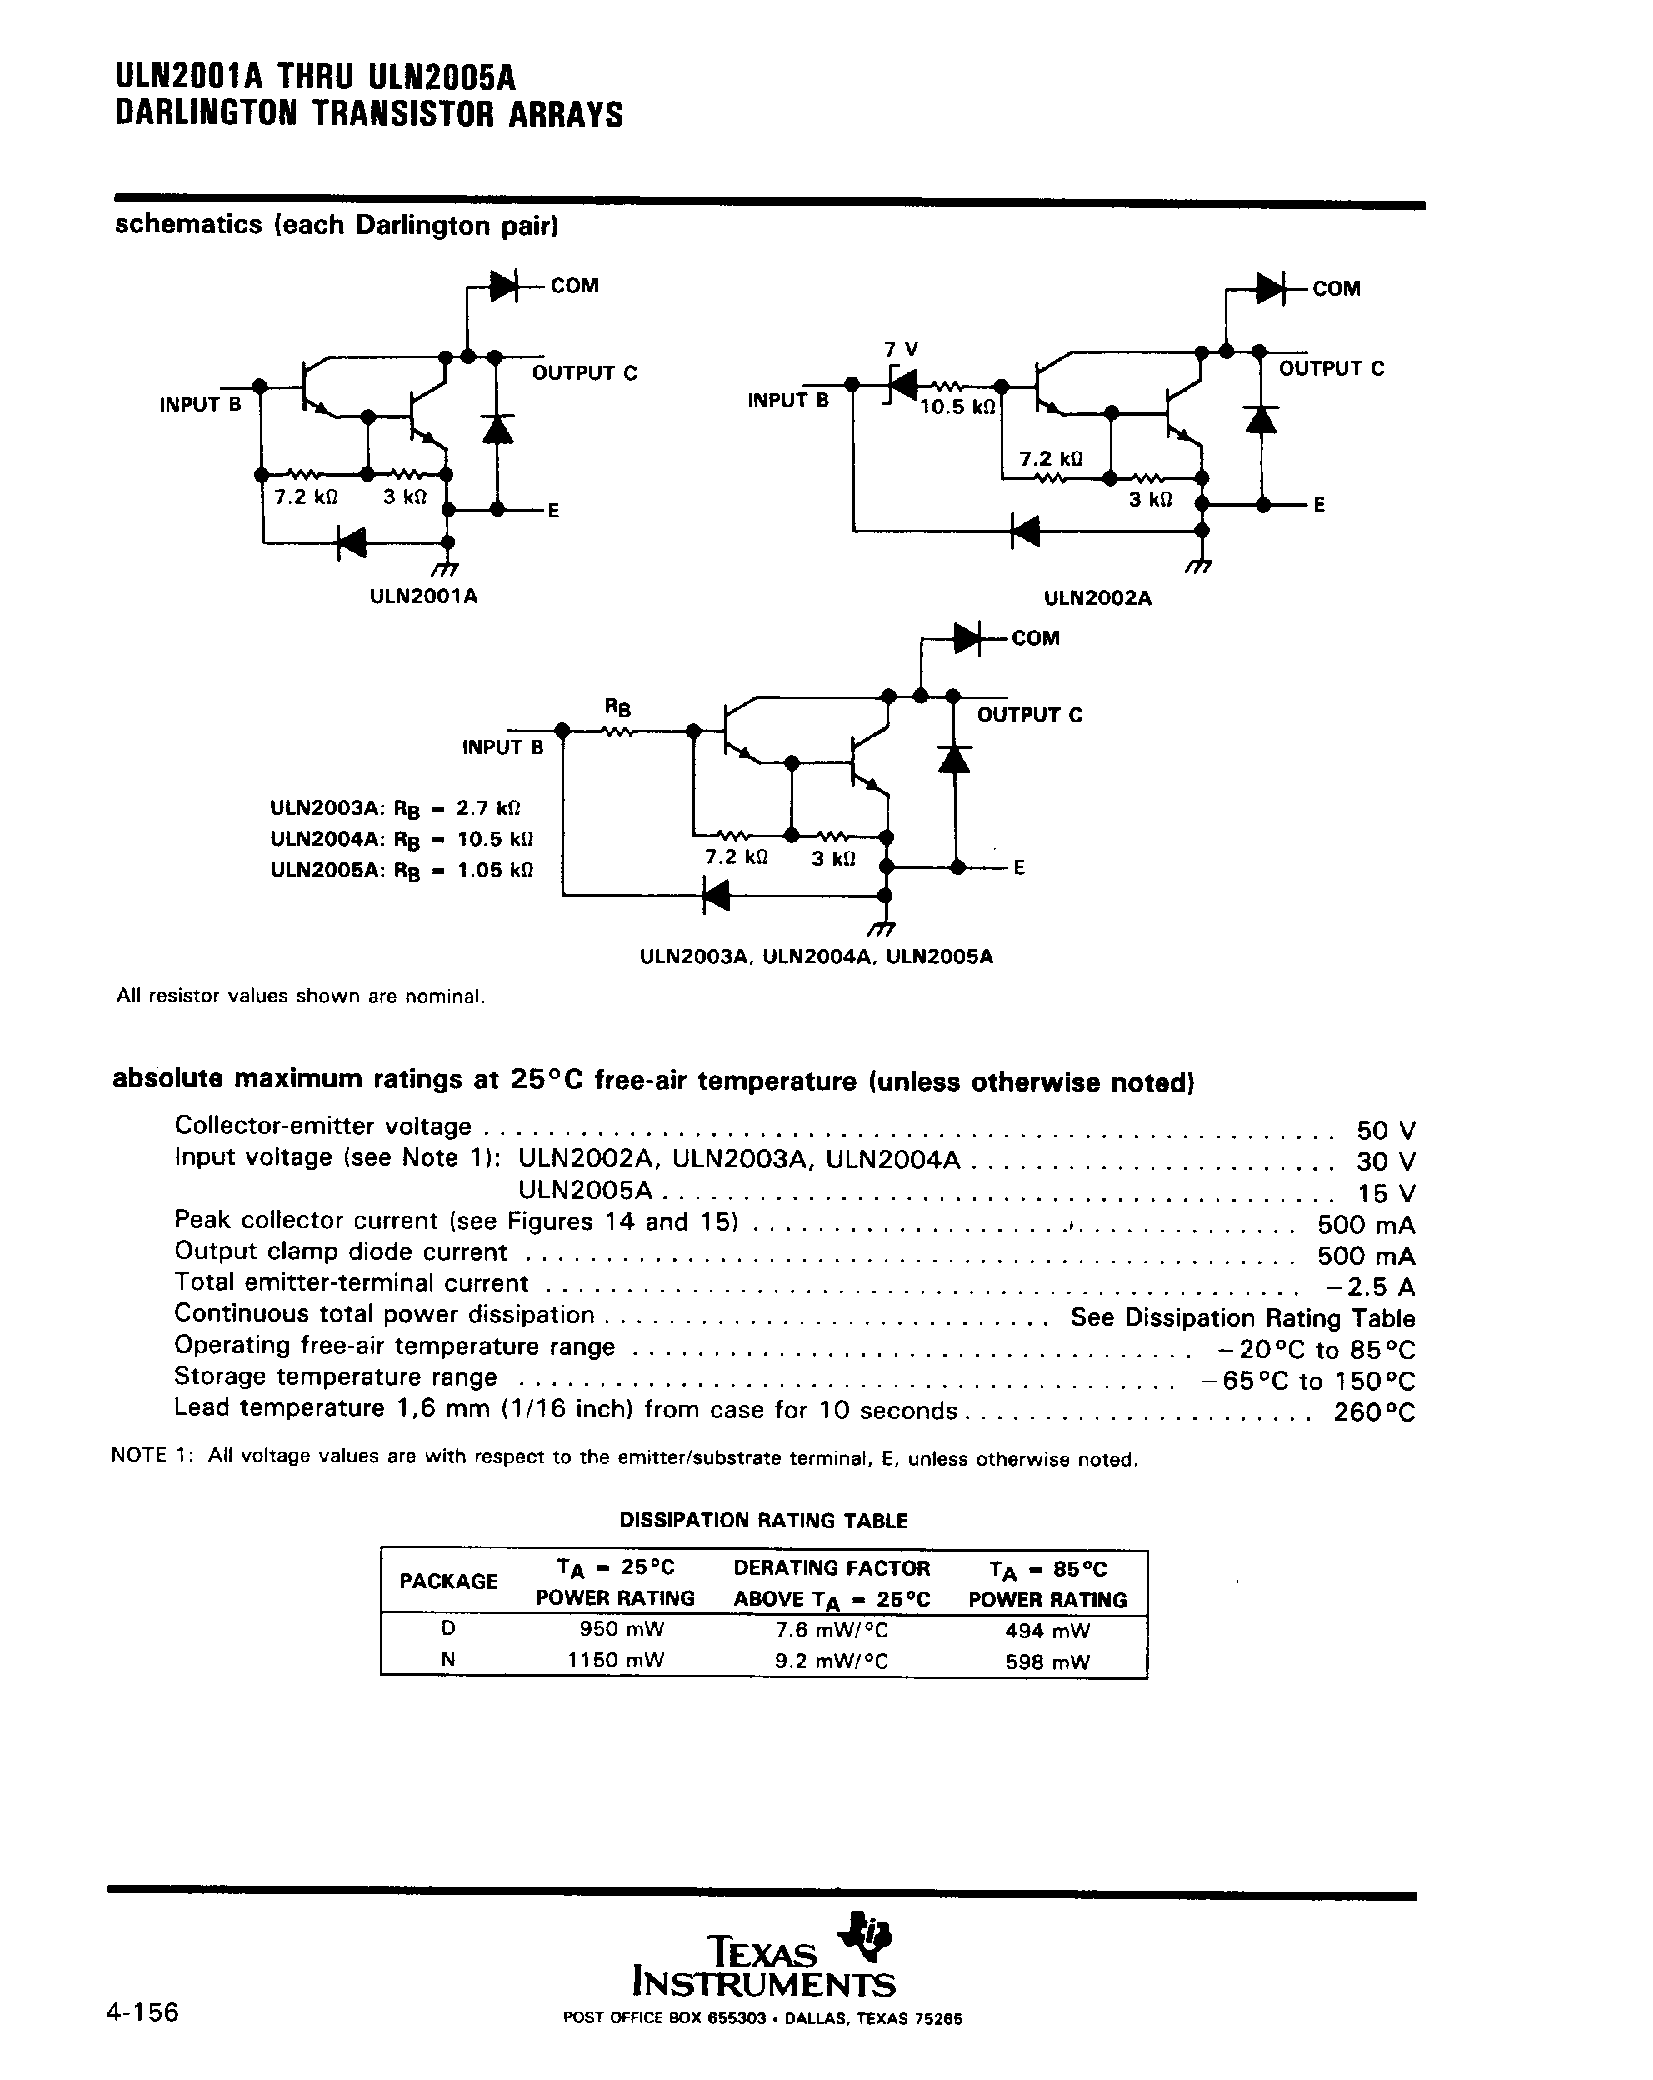 Даташит ULN2005A-(ULN2001A - ULN2005A) Darlington Transistor Arrays страница 2